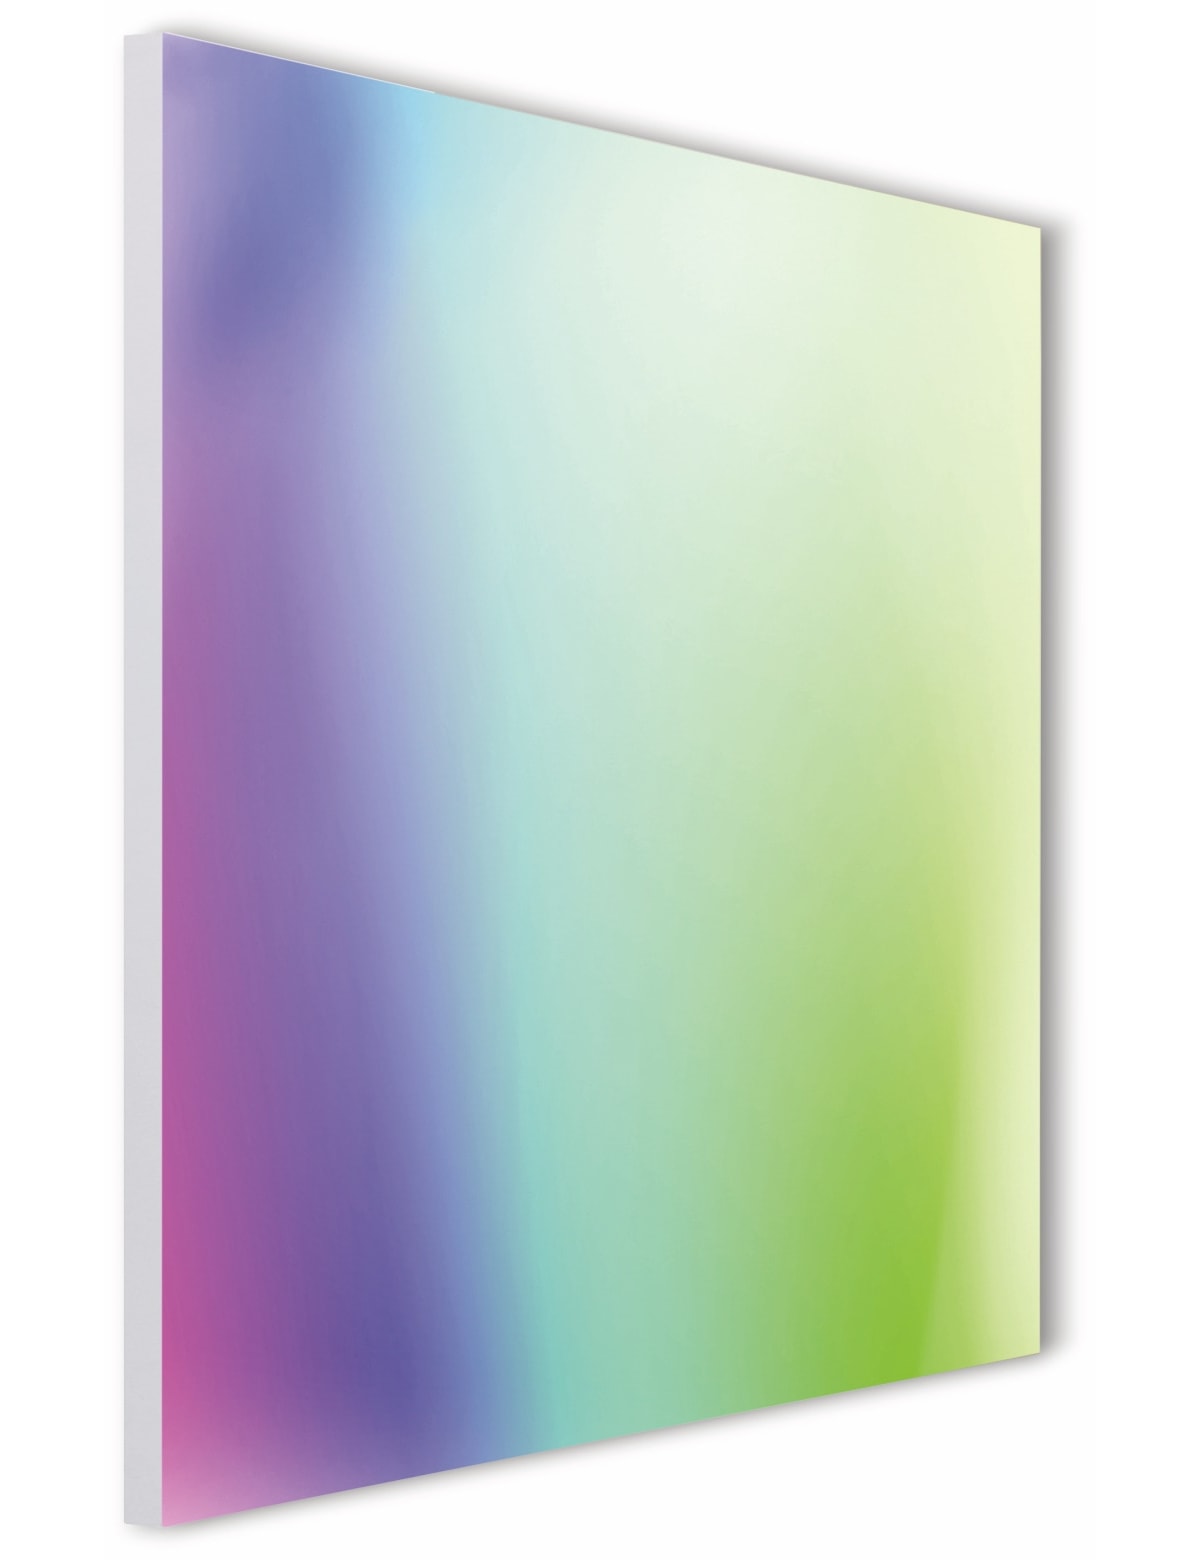 TINT LED-Panel Aris, 60x60 cm, 2000 lm, Rahmenlos, 36 W, RGB